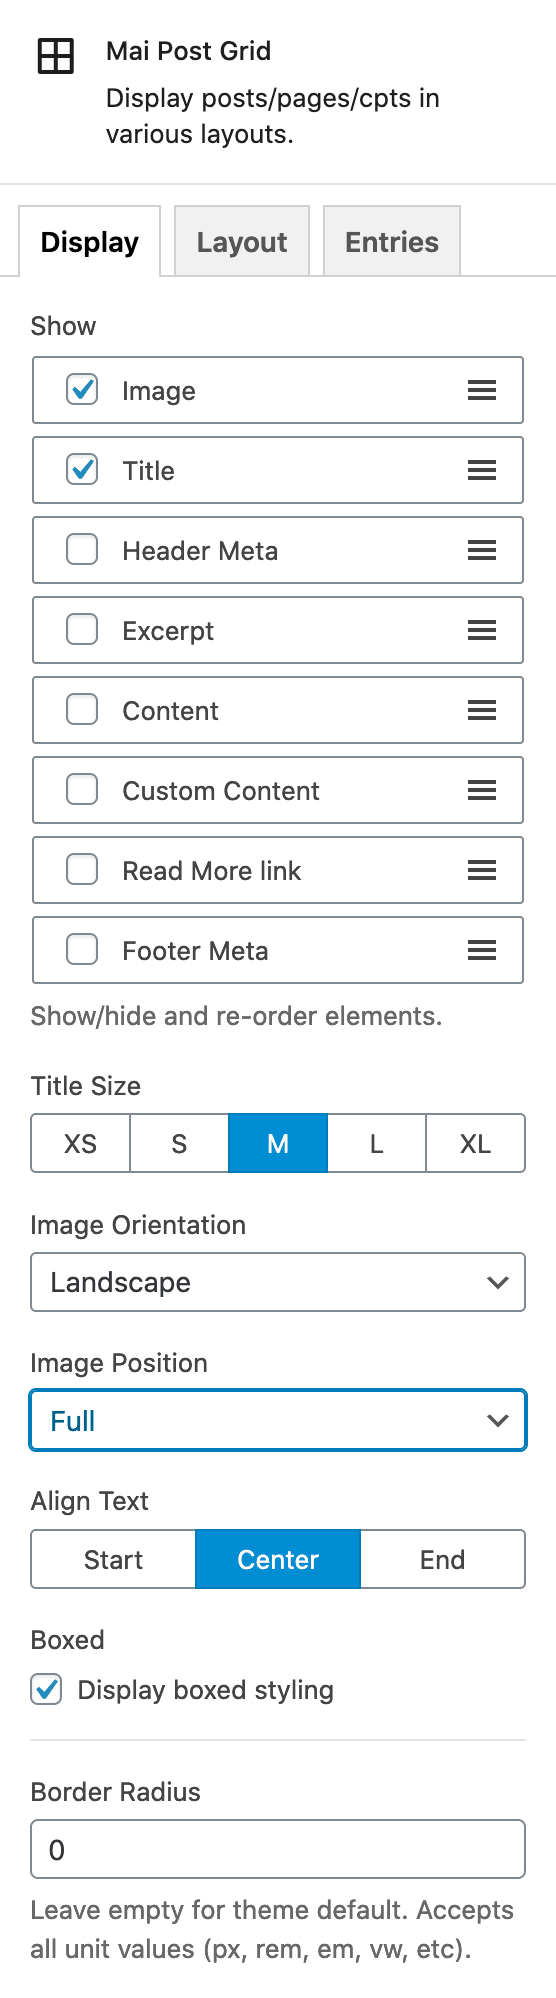 Mai Post Grid Display tab